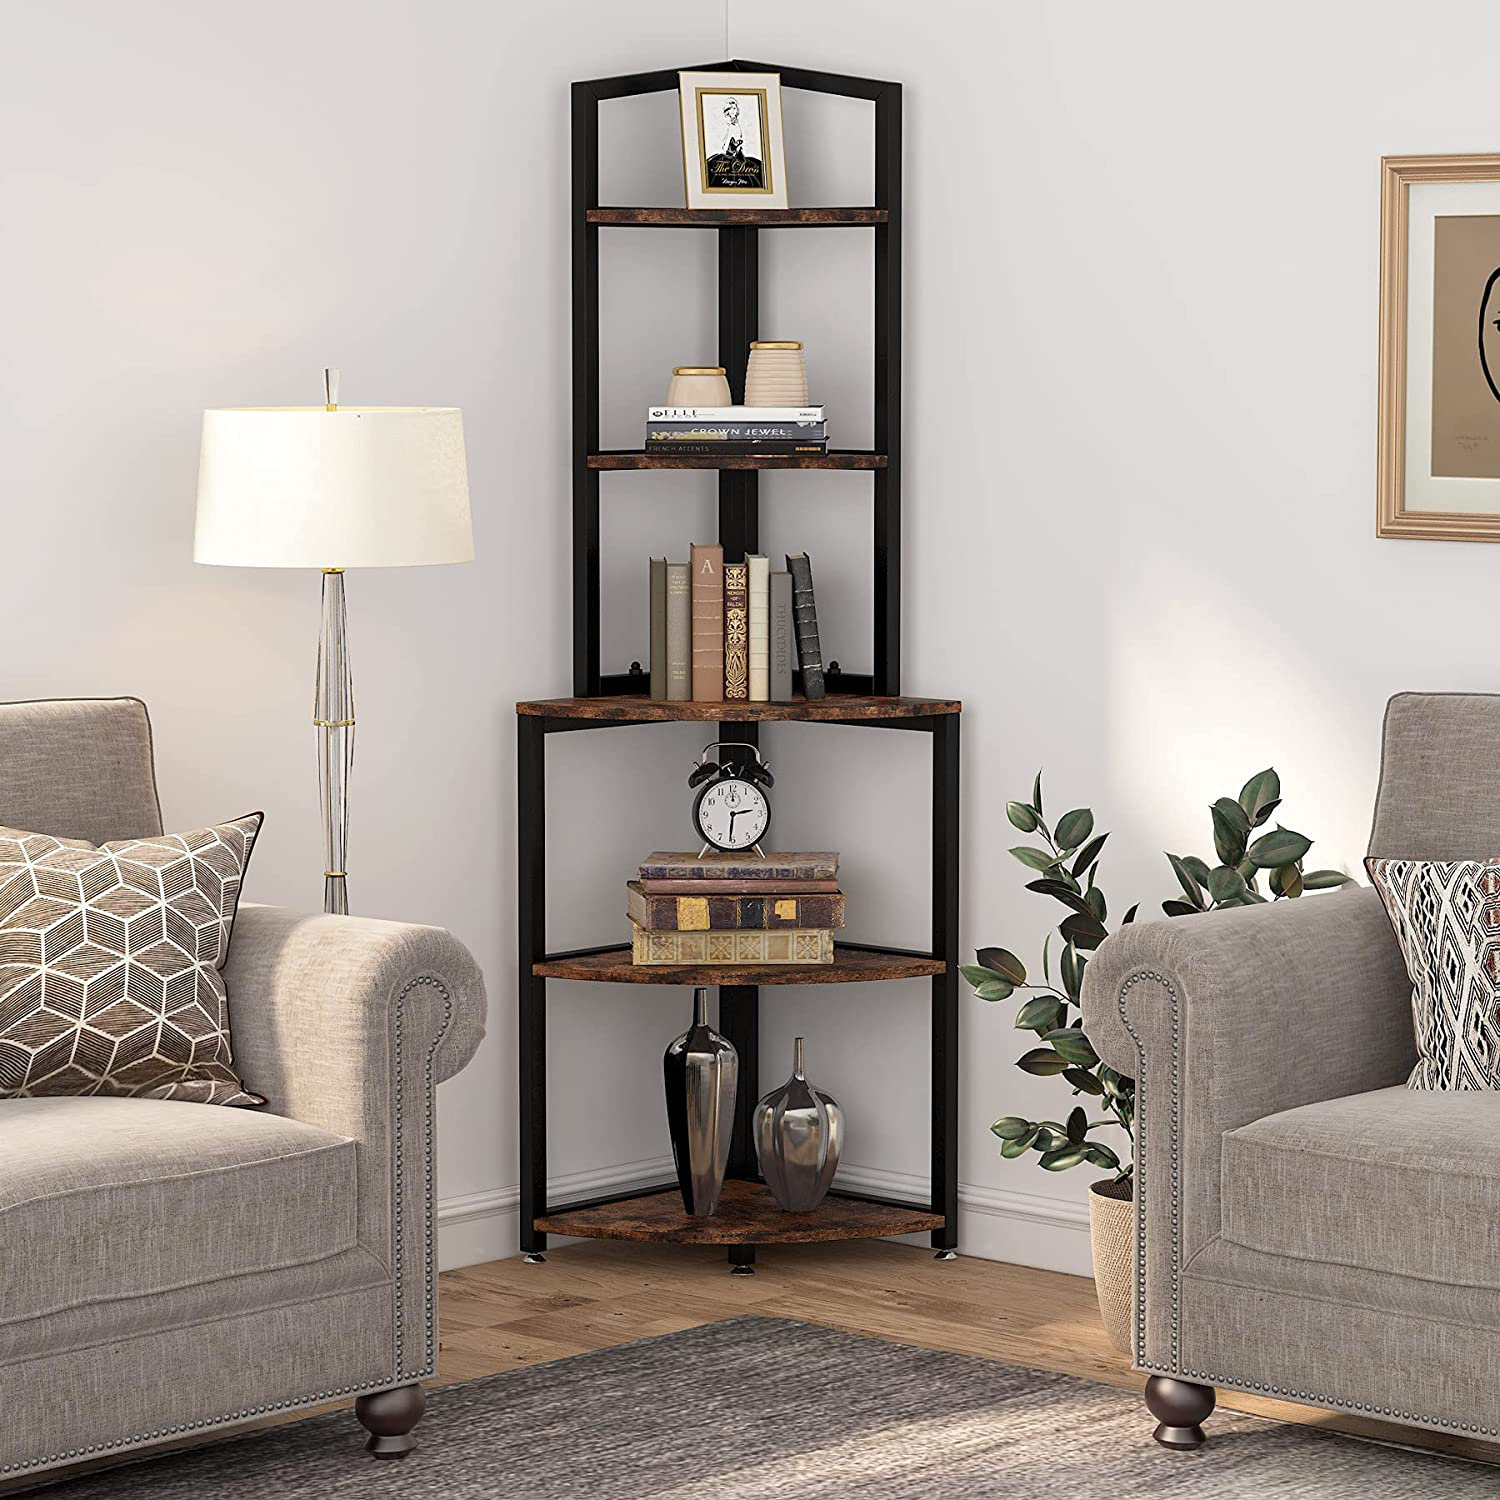 https://assets.wfcdn.com/im/43064432/compr-r85/1642/164276046/kechi-corner-shelf-corner-bookcase-with-5-tier-storage-shelves-for-bedroom-living-room.jpg